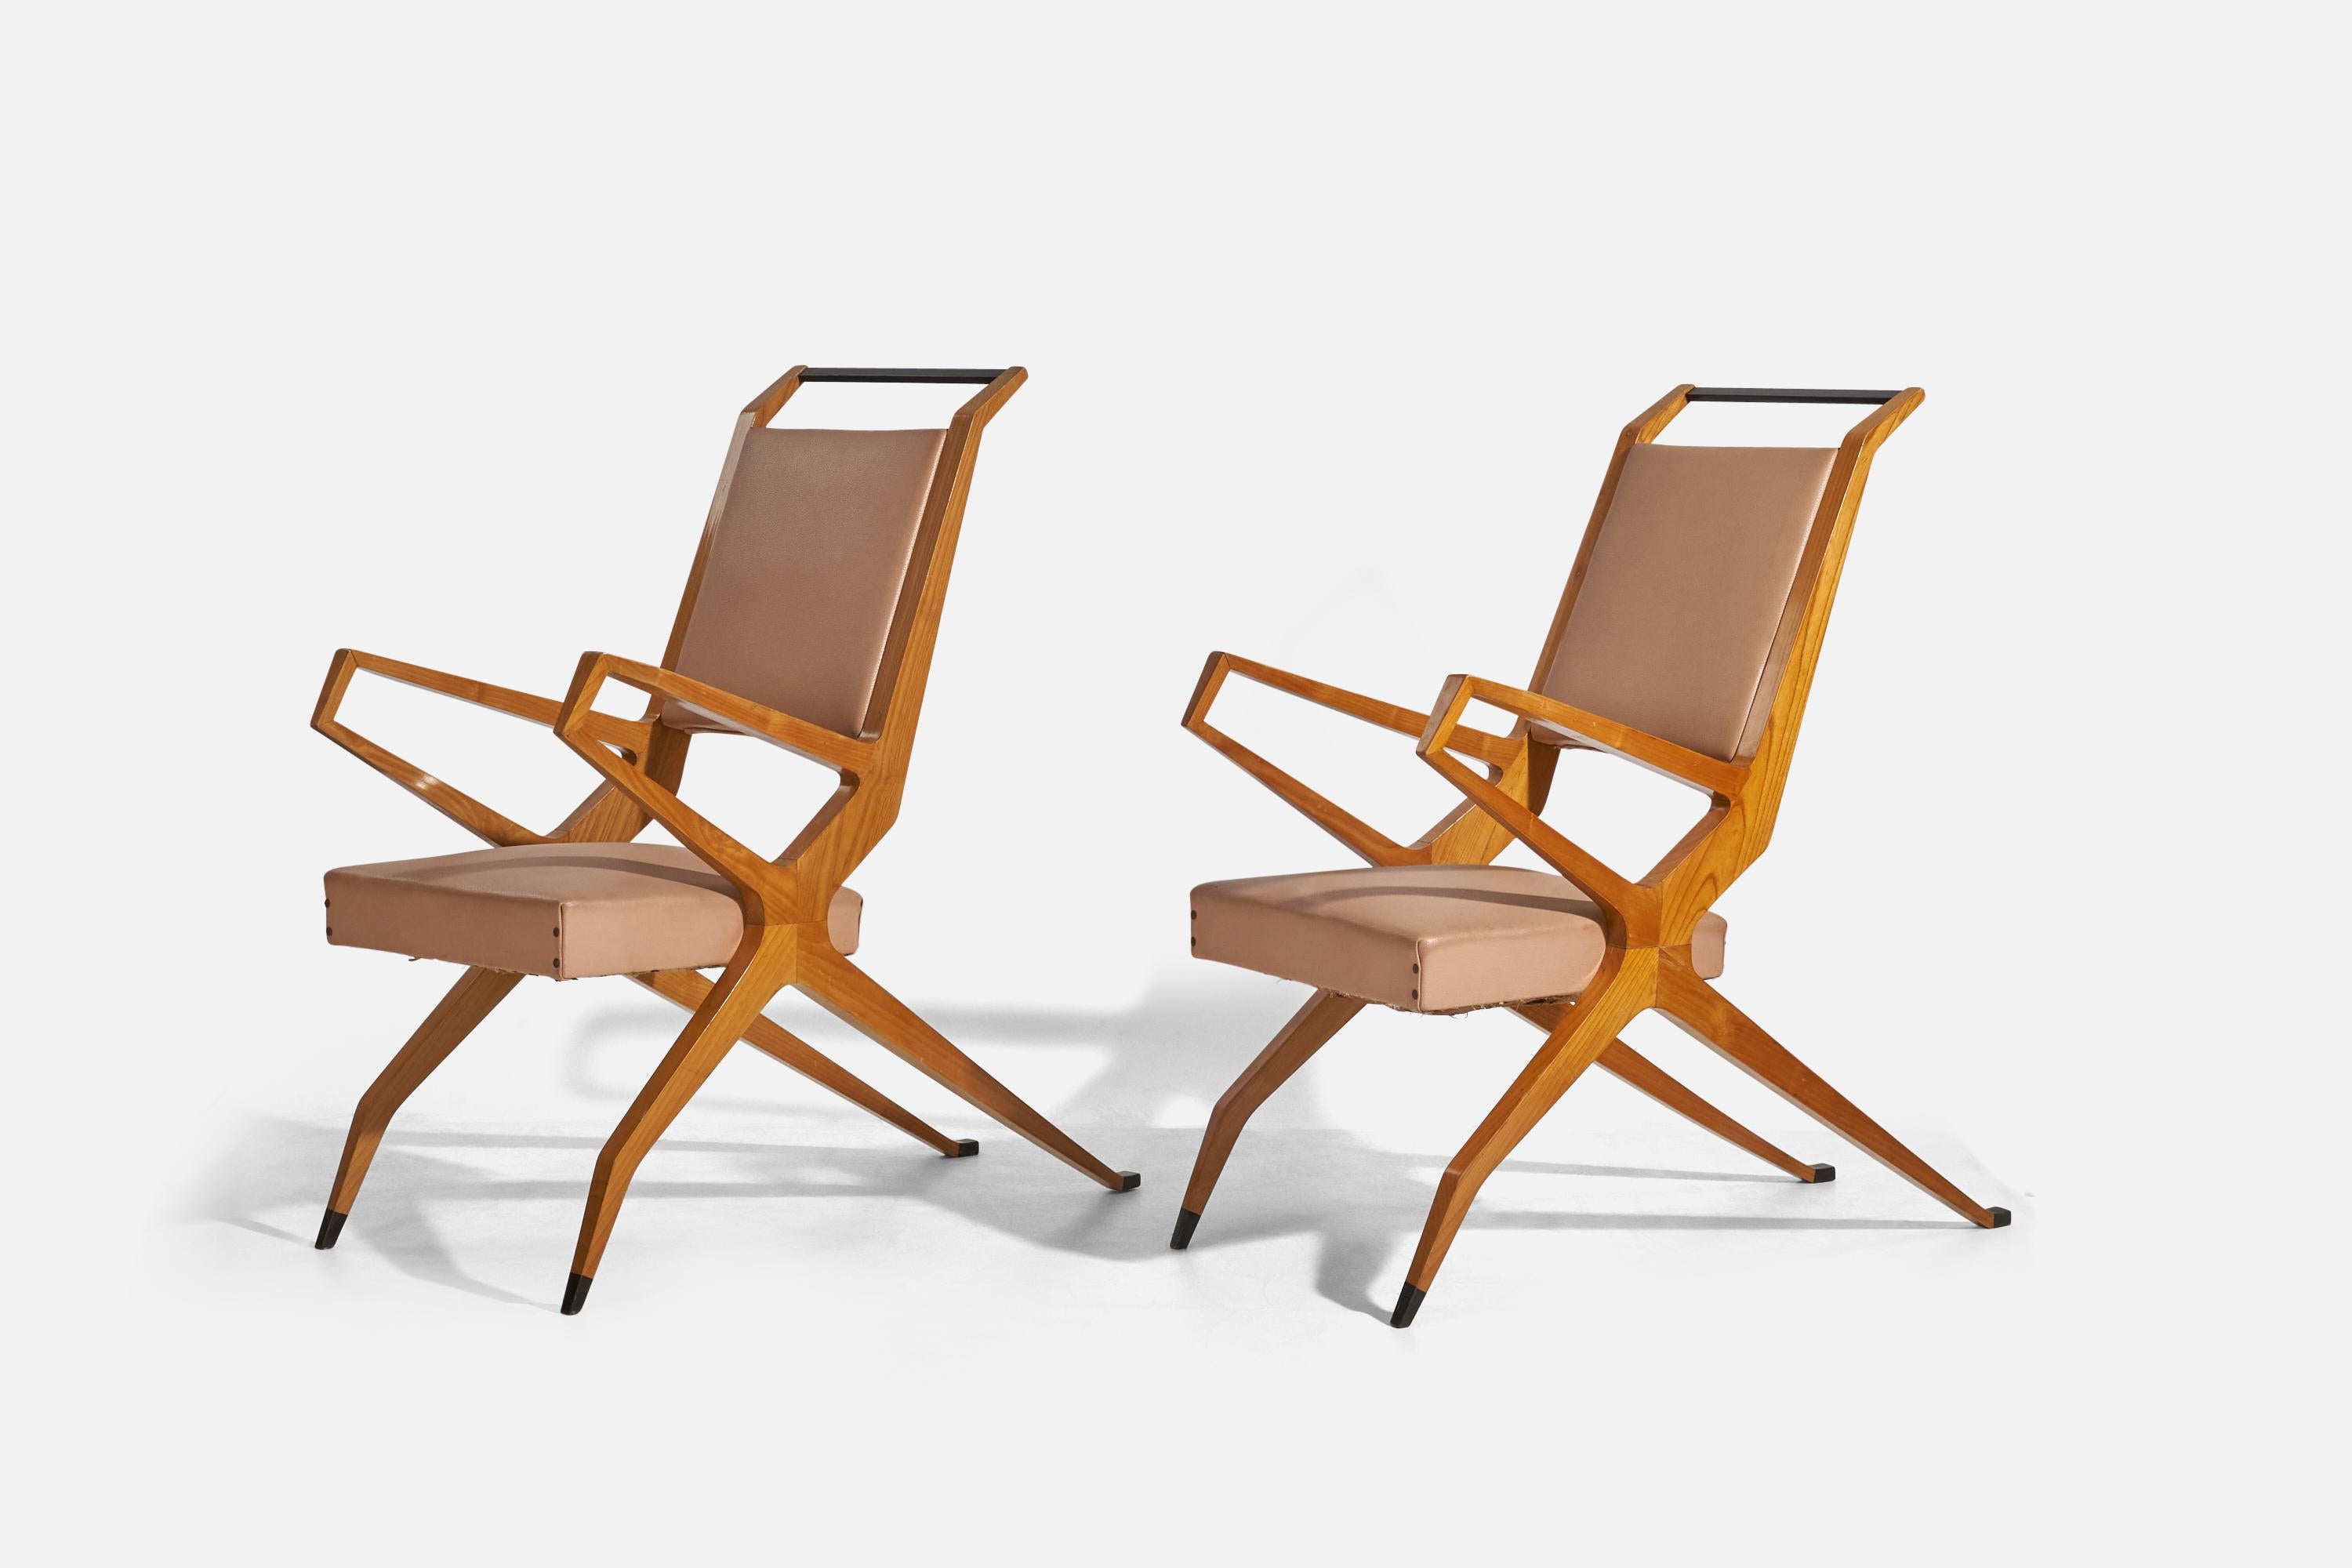 Paire de chaises longues en frêne, bois laqué, vinyle et laiton ; conception et réalisation attribuées à Franco Campo et Carlo Graffi, Italie, vers 1955.